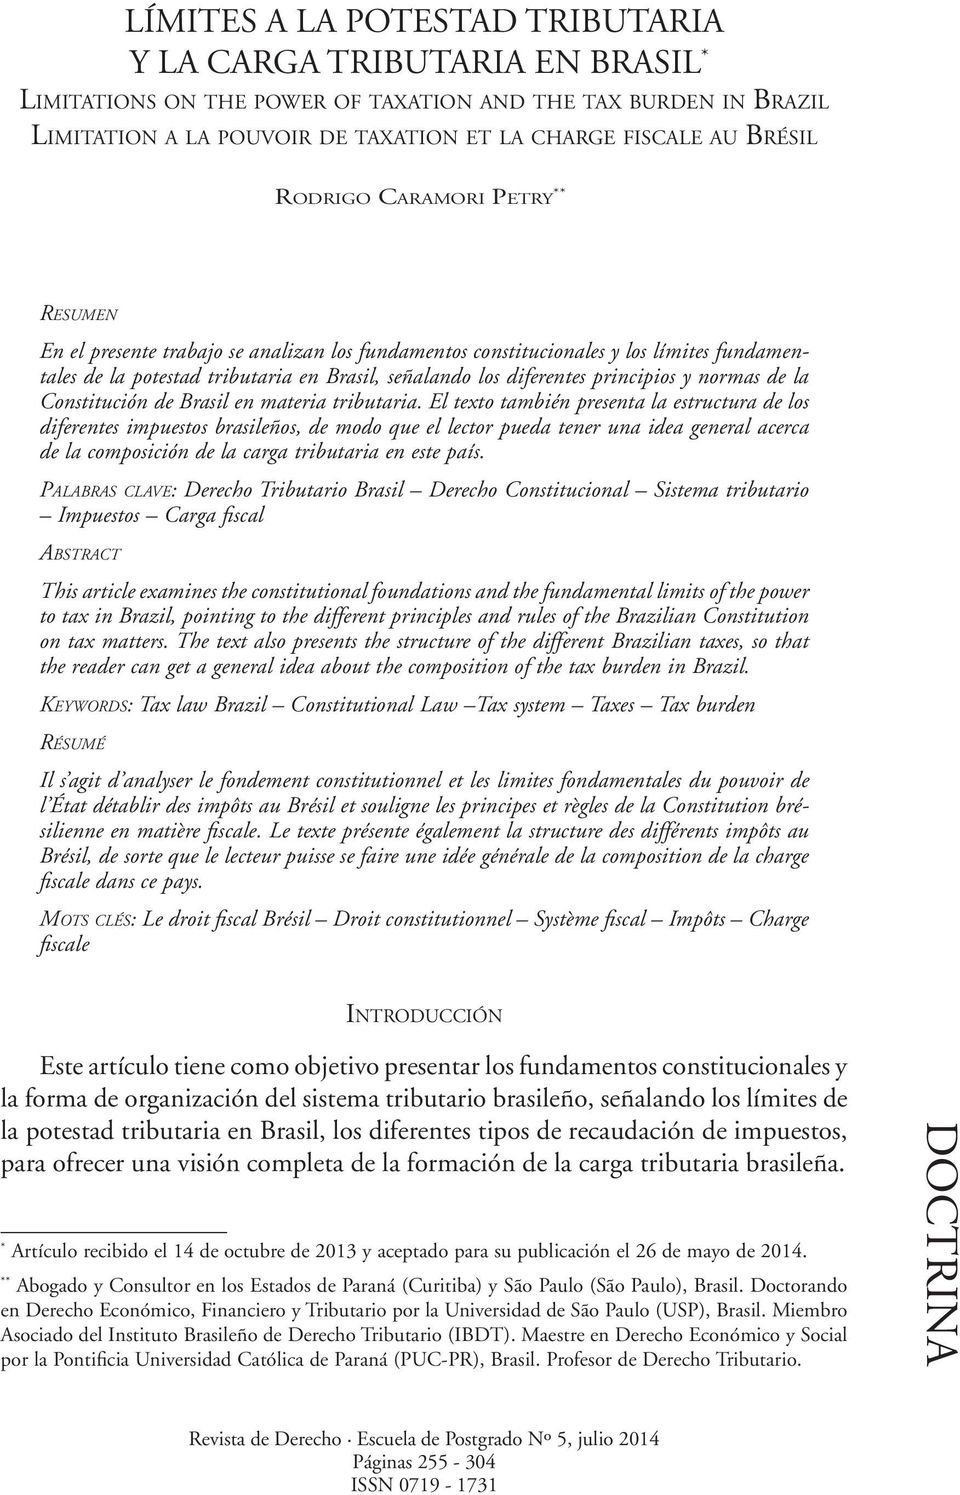 principios y normas de la Constitución de Brasil en materia tributaria.